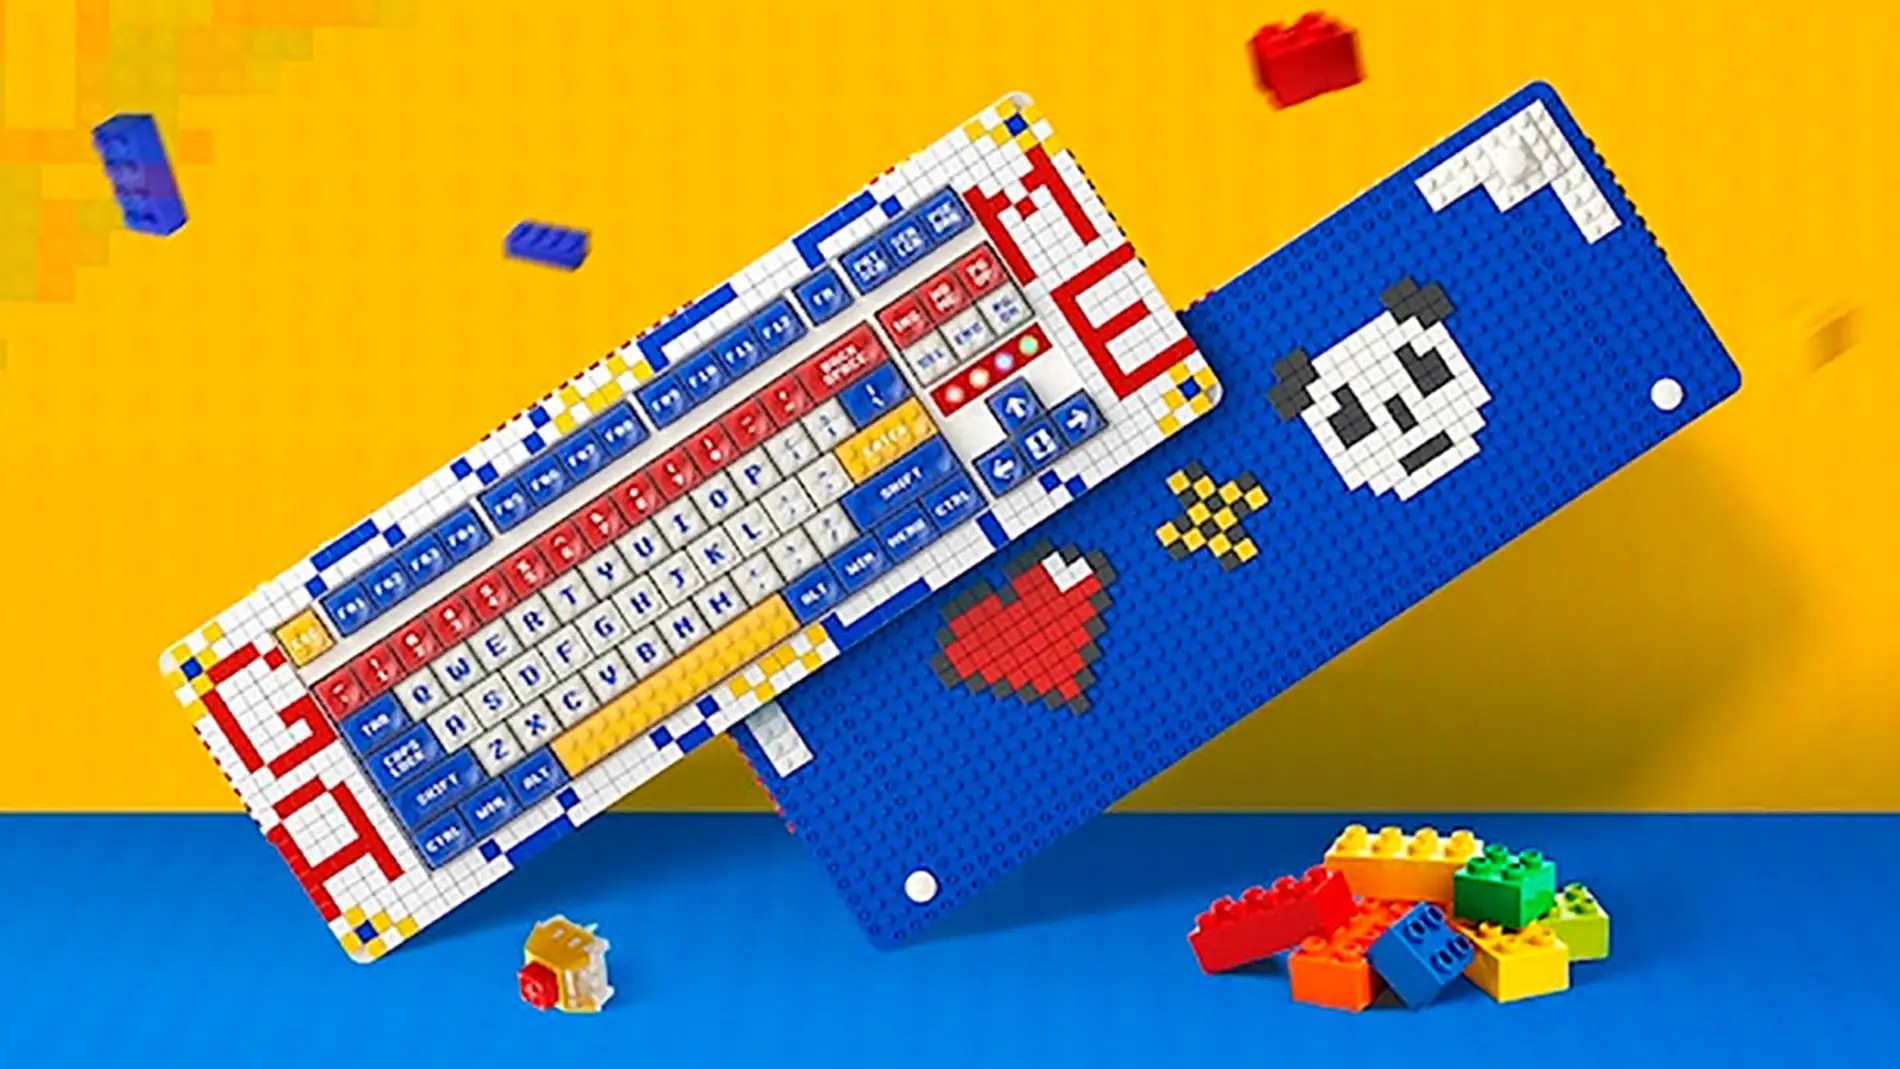 Los diseños del teclado Pixel